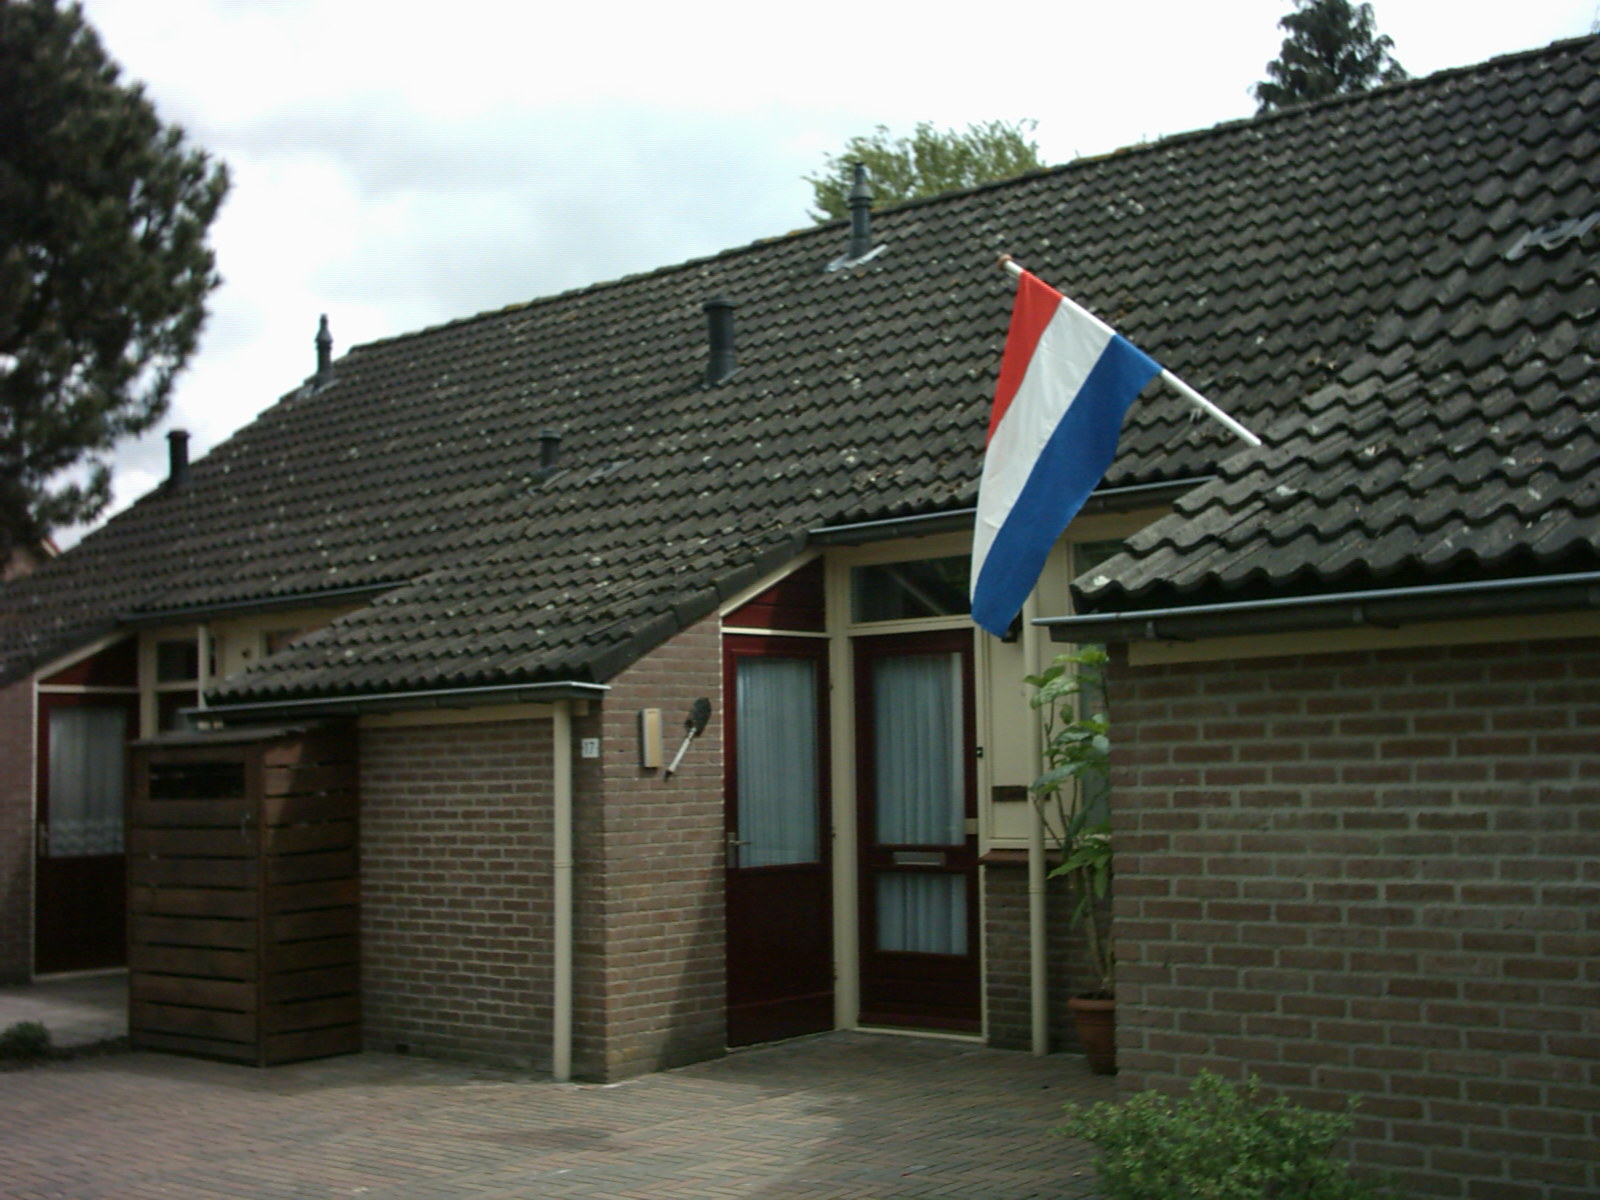 Prunusweg 17, 7213 WX Gorssel, Nederland